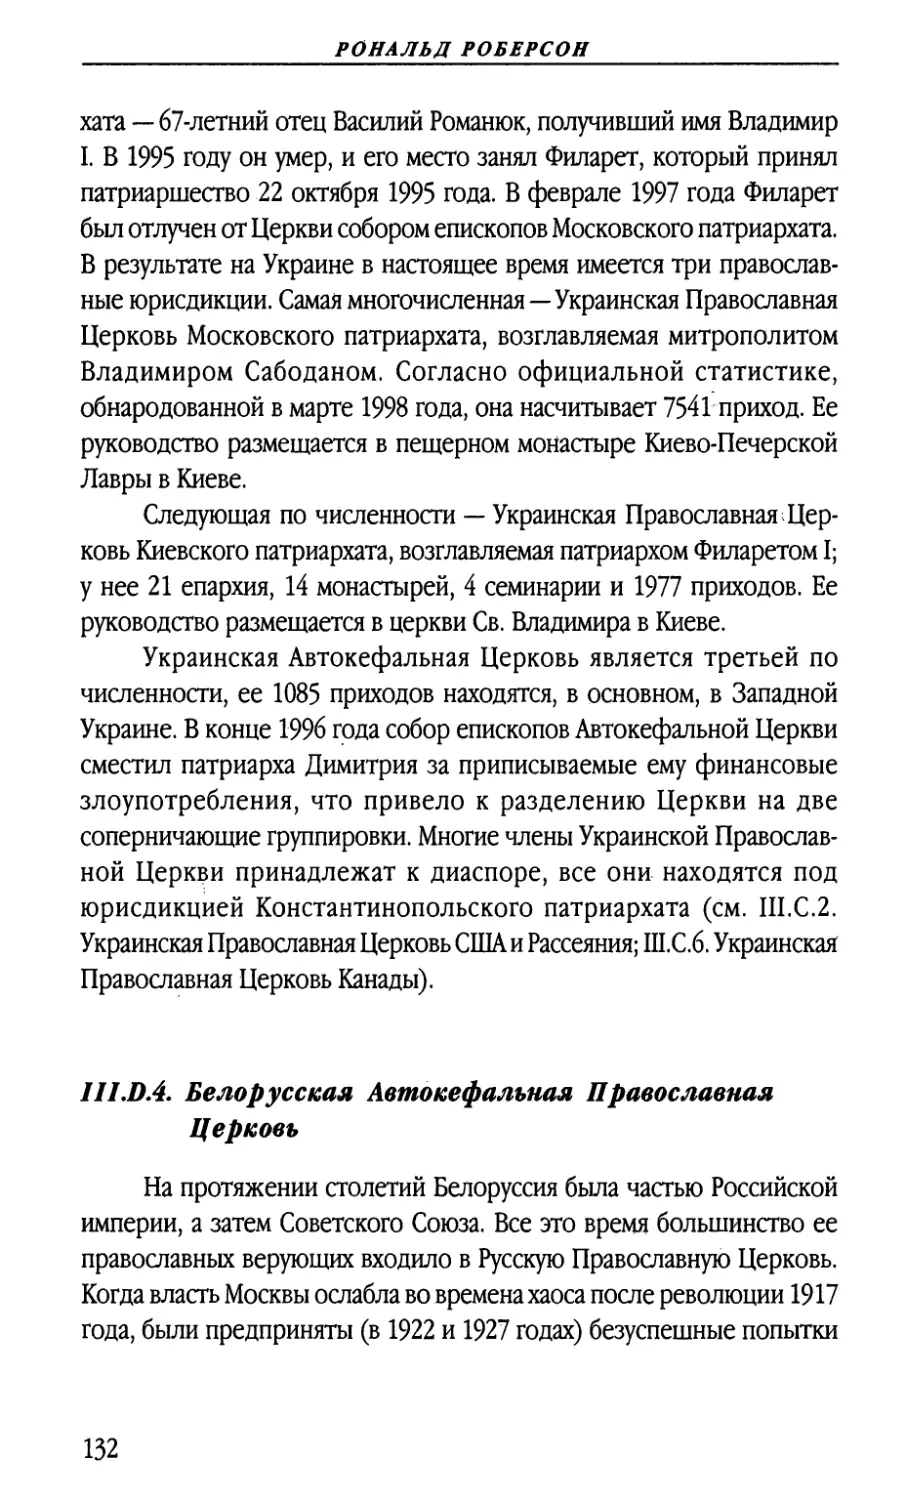 III.D.4. Белорусская Автокефальная Православная Церковь